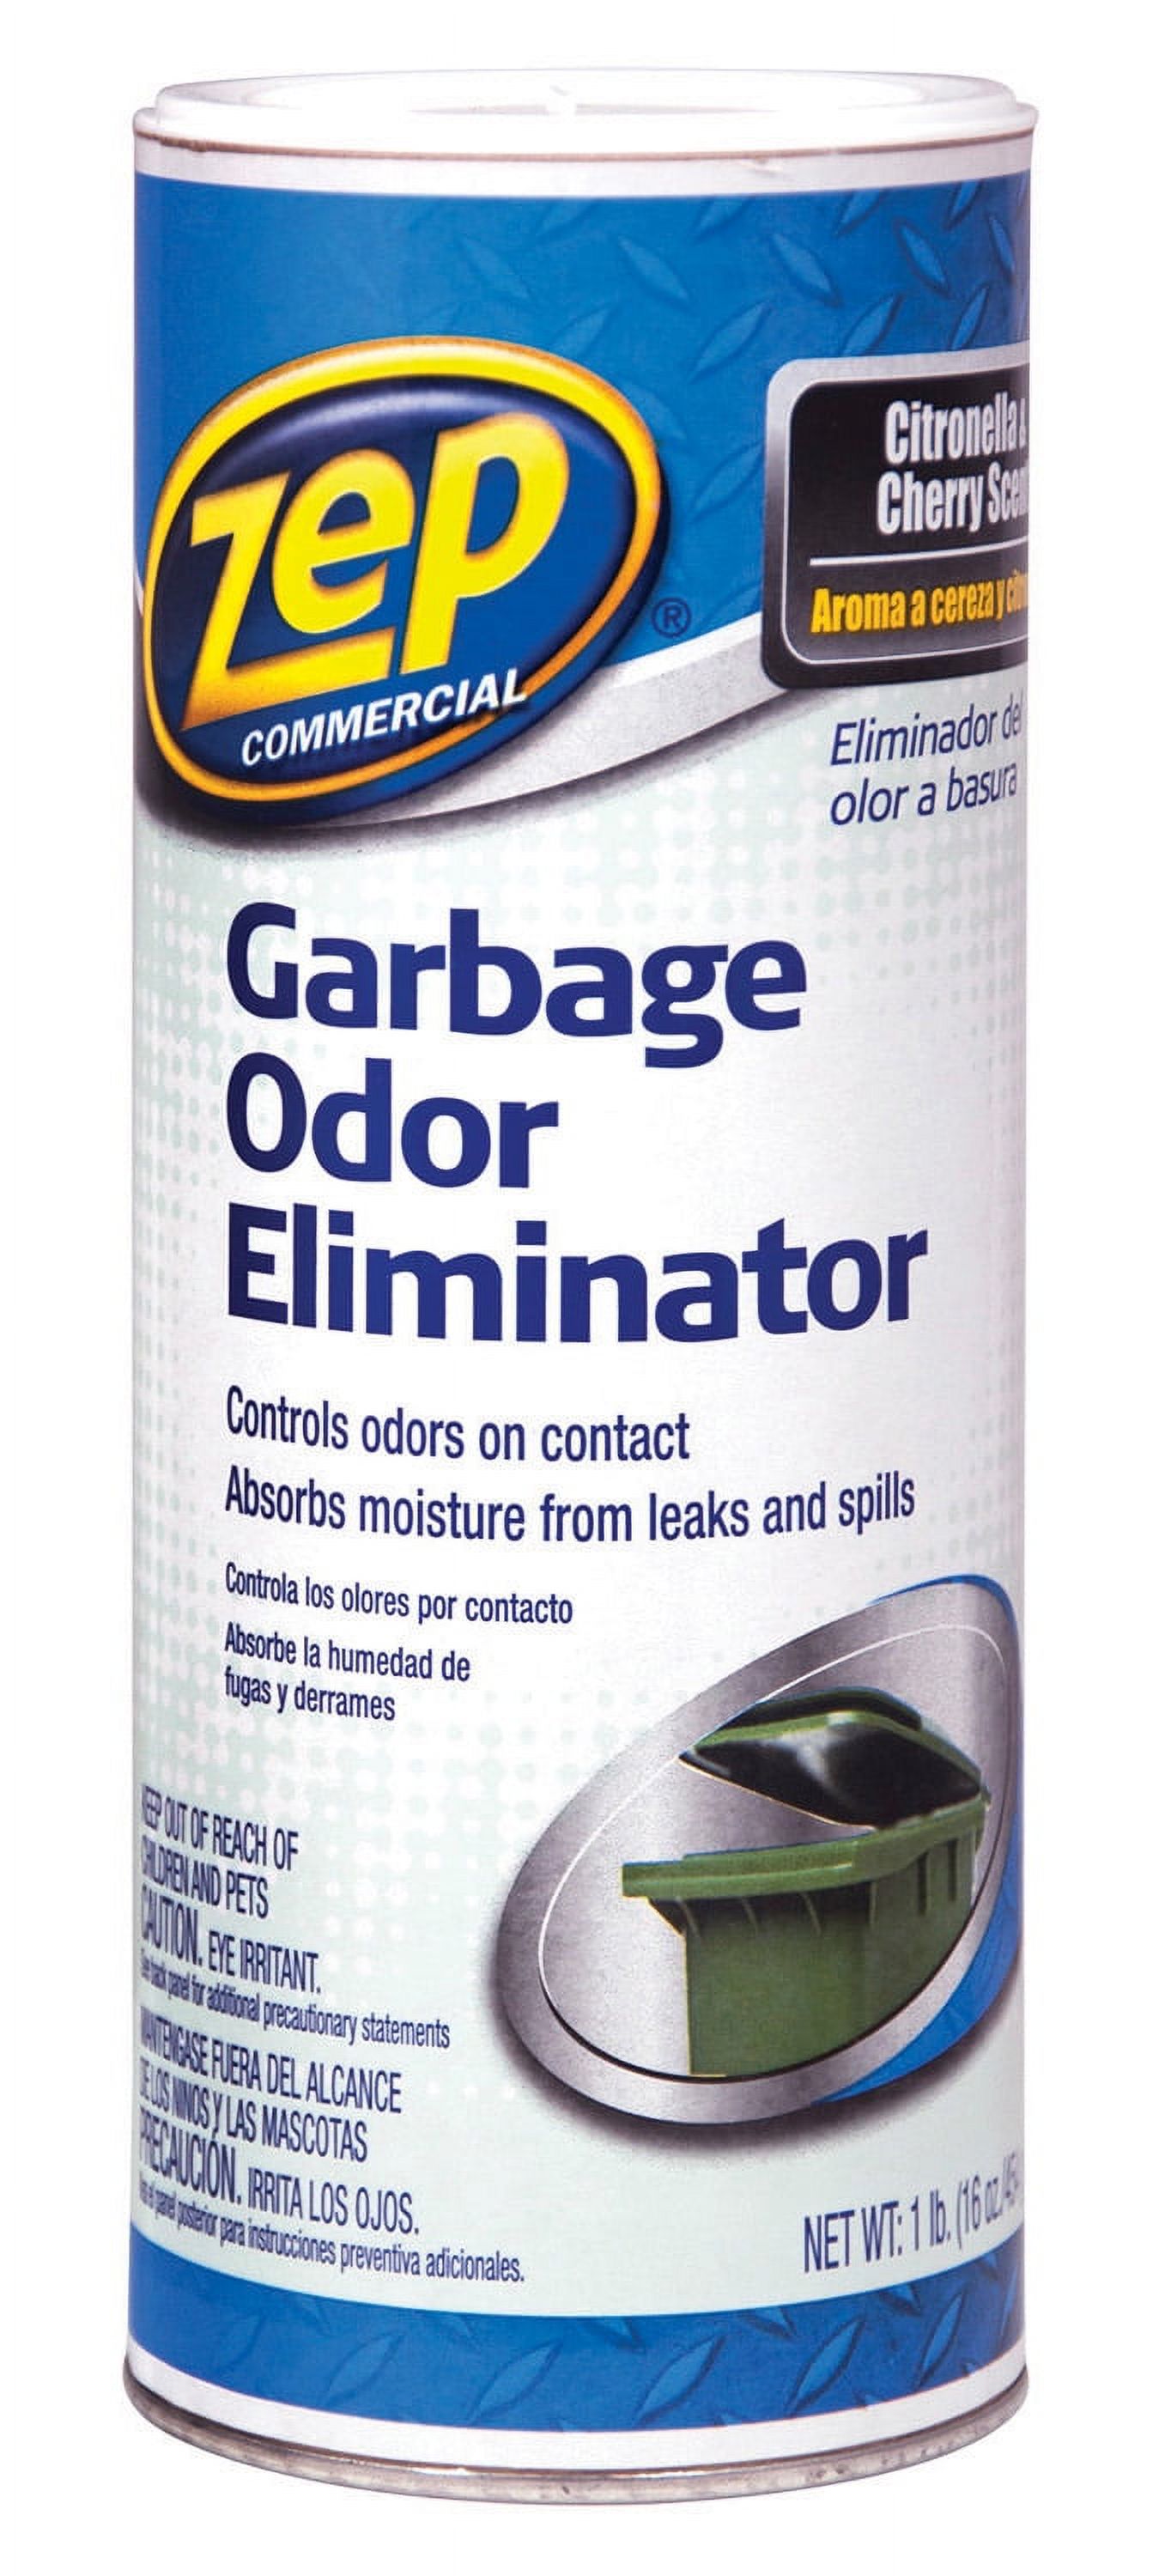 Garbage Odor Eliminator, 1 lb - image 1 of 2